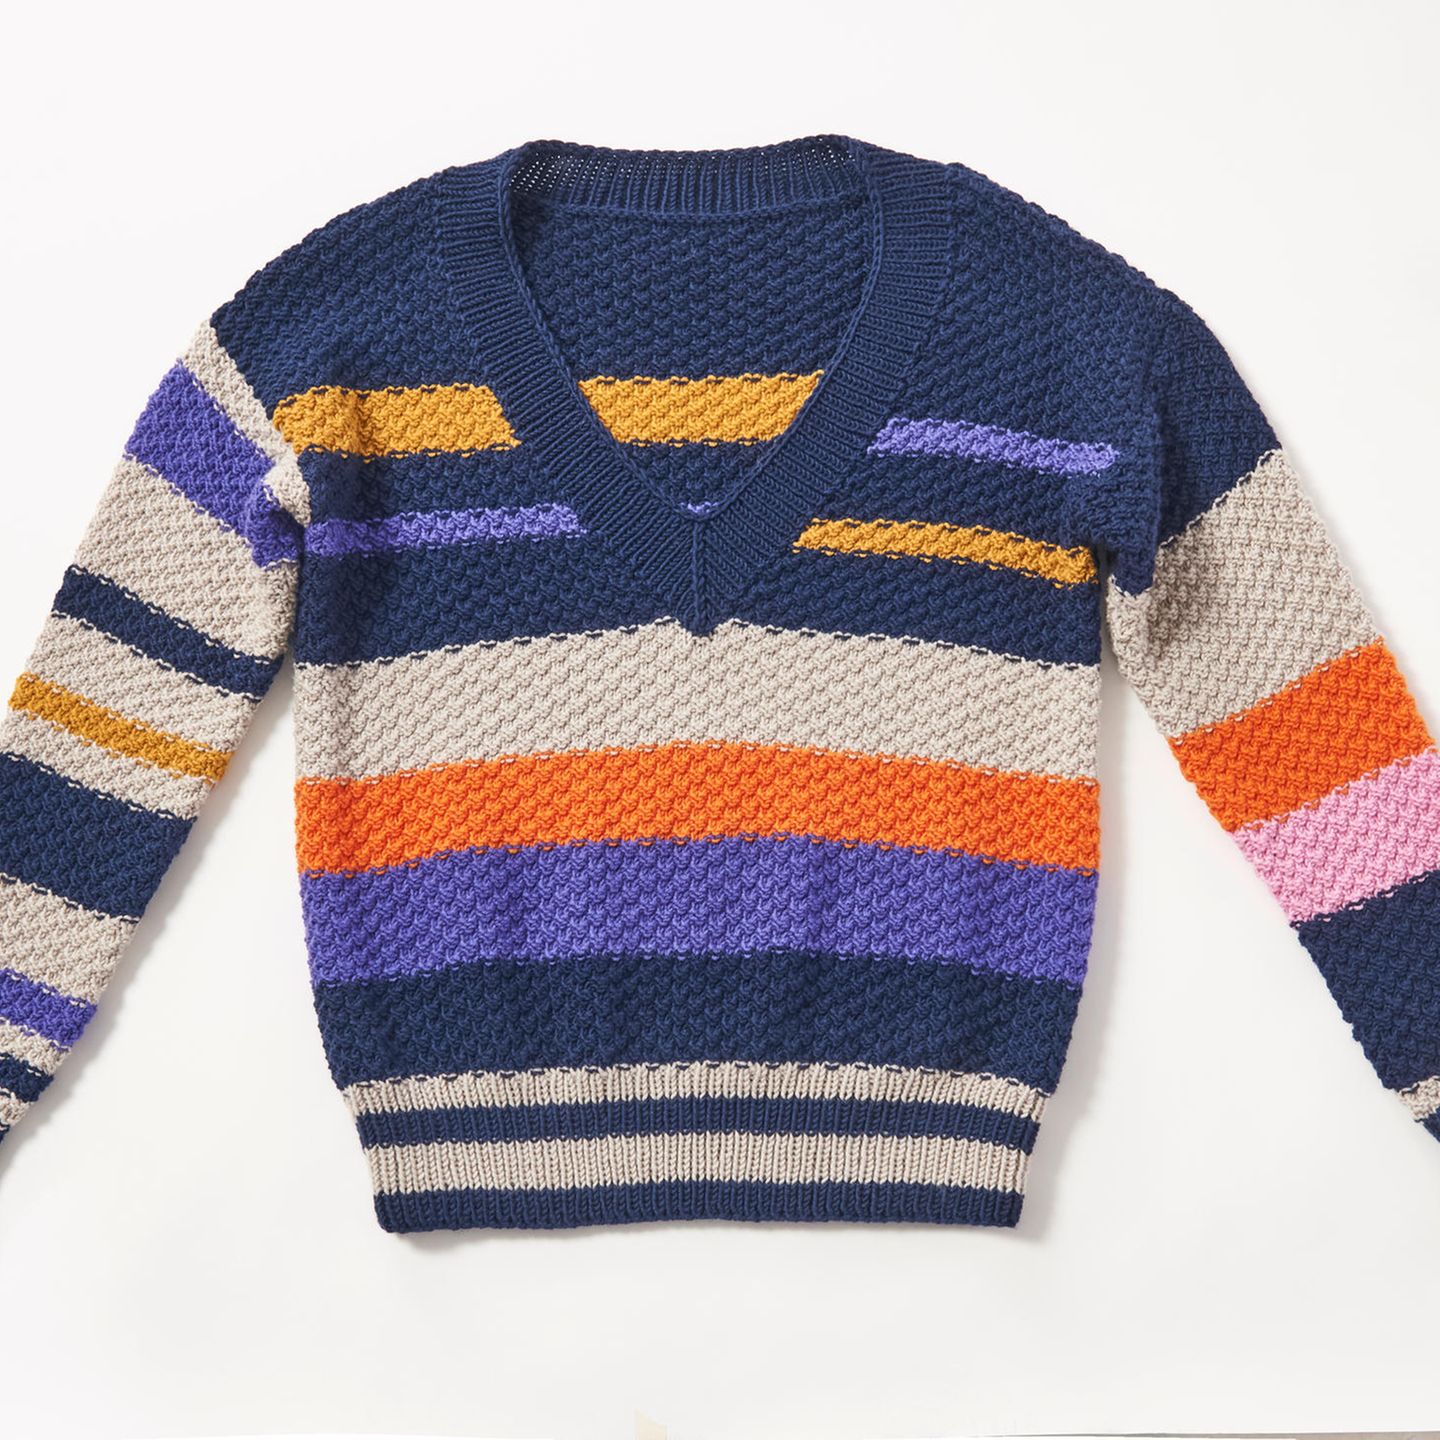 Streifen-V-Pullover stricken: bunt gestreifter Pullover mit V-Ausschnitt